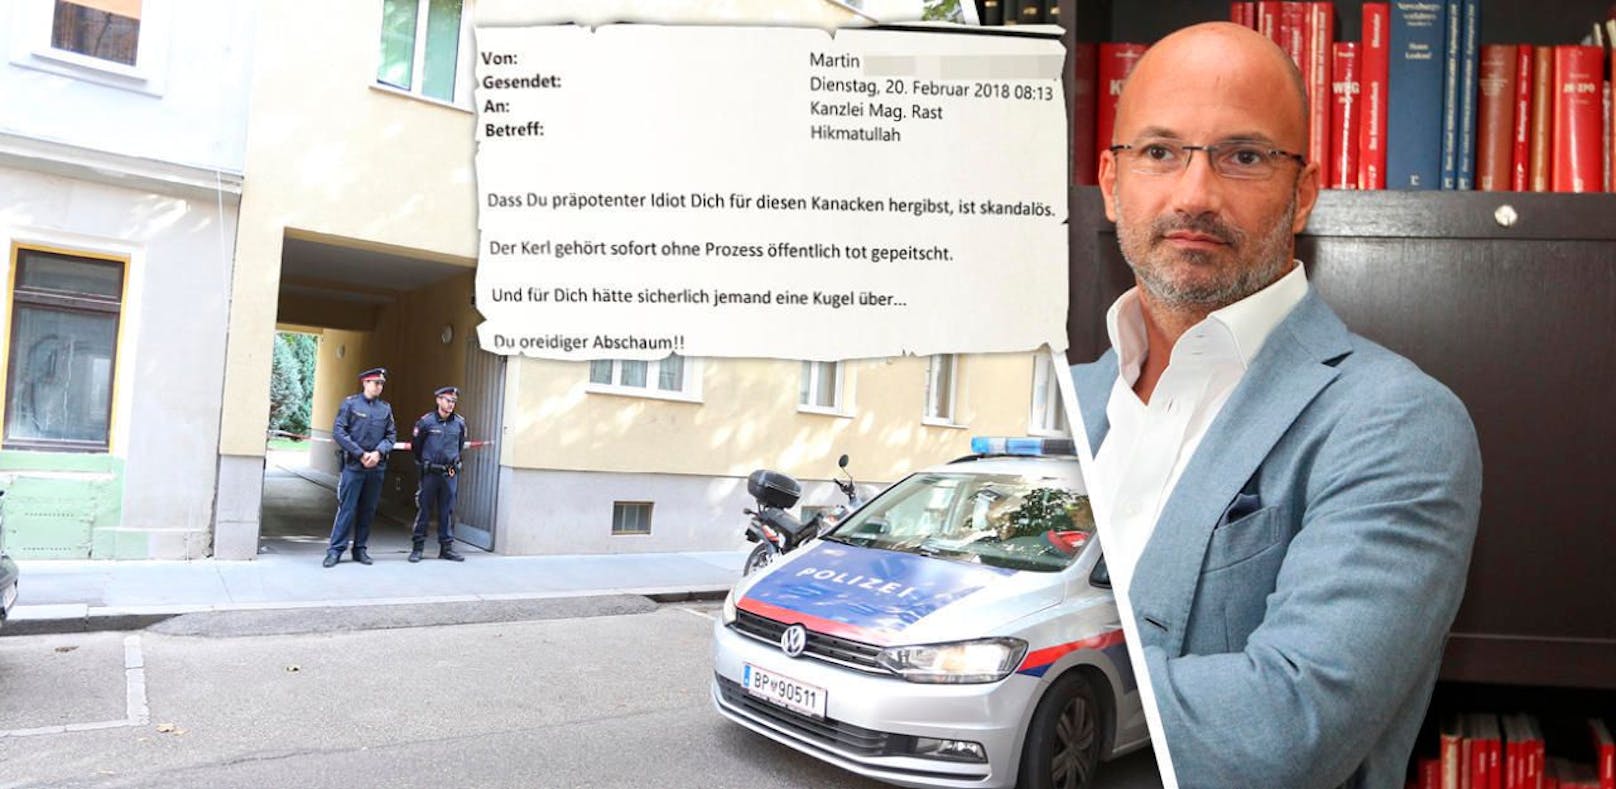 Causa Ehrenmord: Die brisante Morddrohung gegen den Wiener Staranwalt Nikolaus Rast im Wortlaut